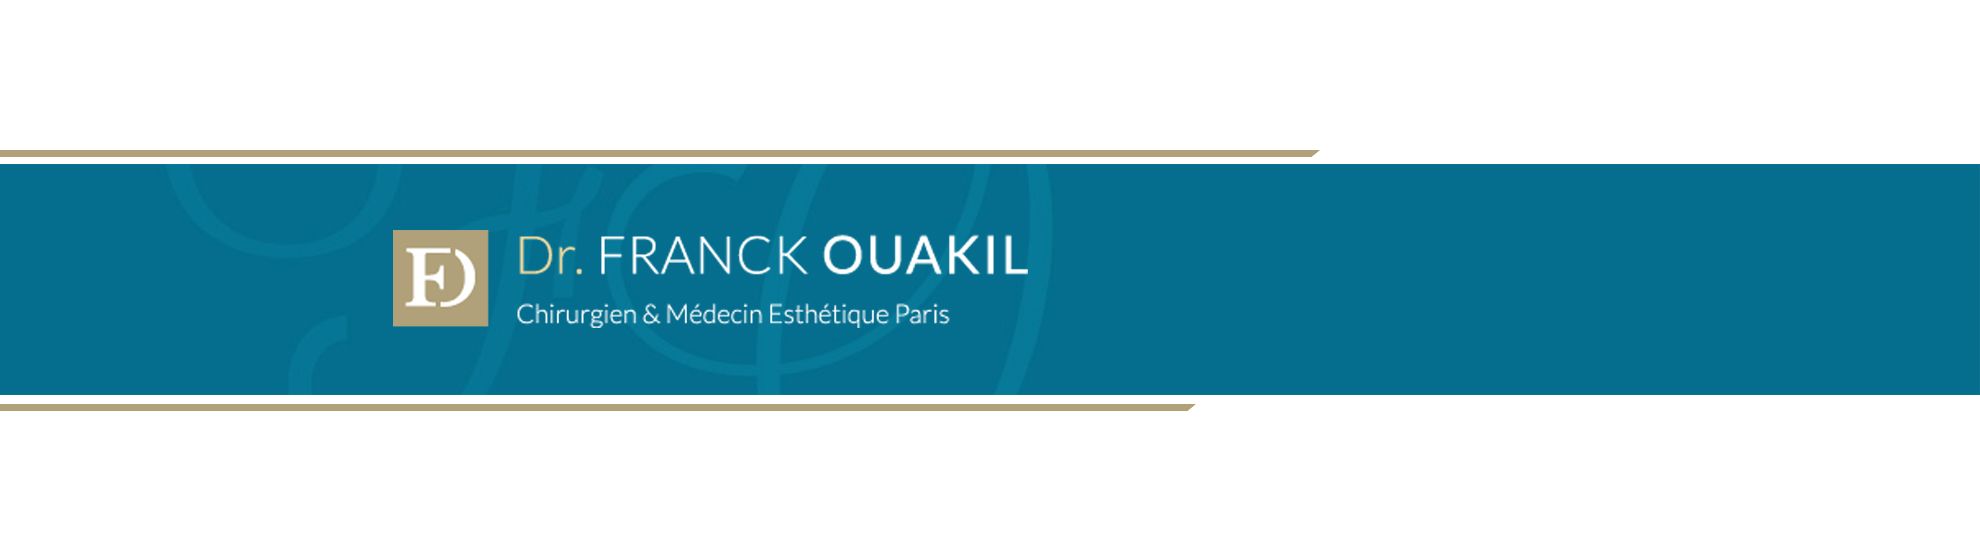 Dr Franck Ouakil